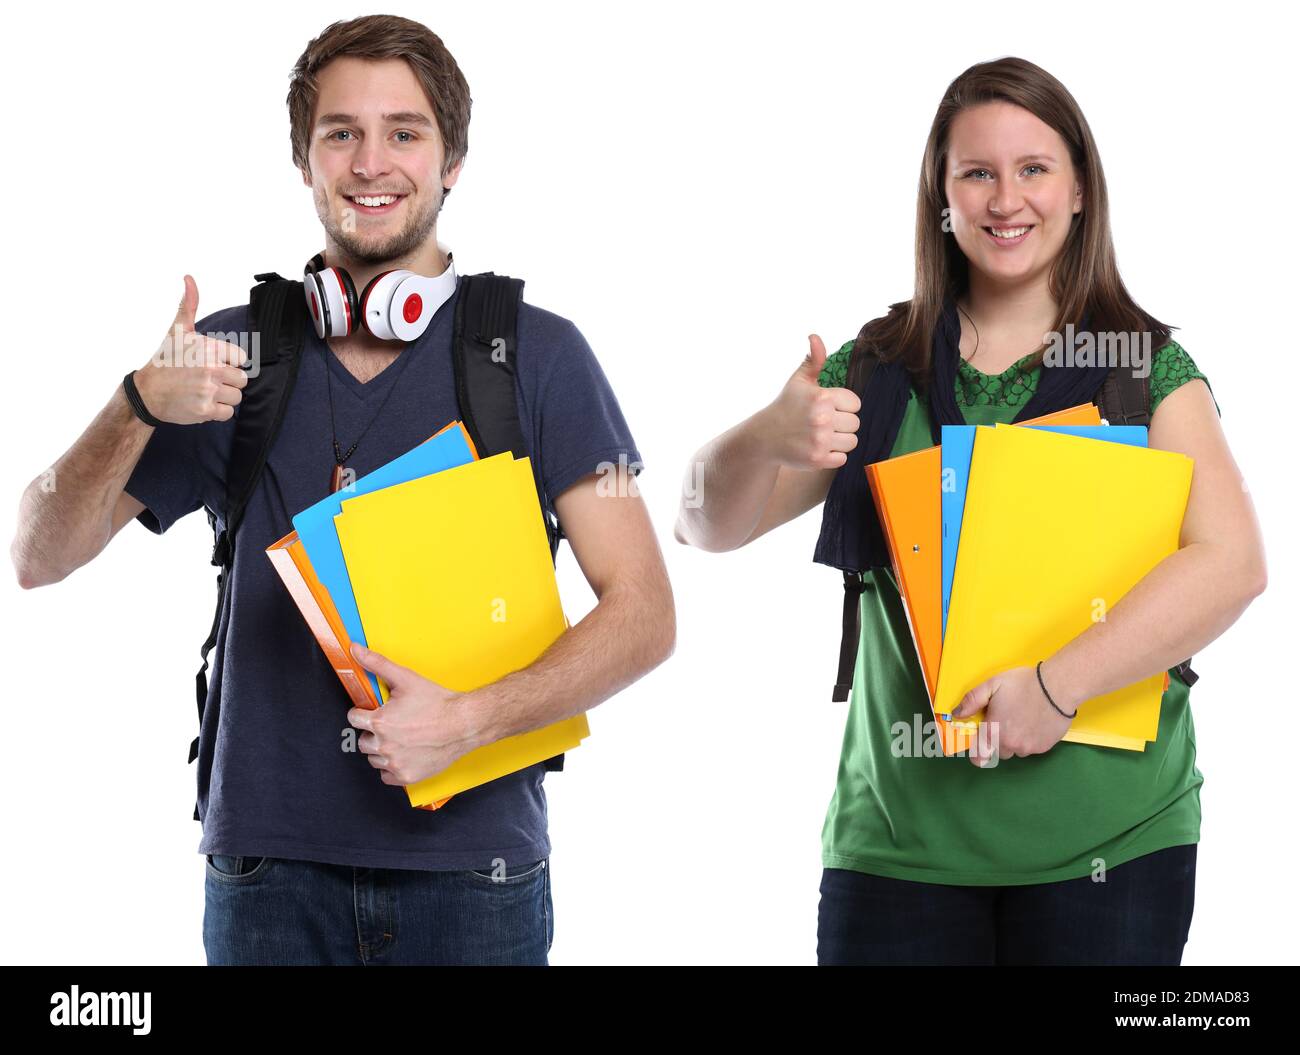 Studenten Daumen hoch junge Frau Mann jung lachen Jugendlicher Freisteller freigestellt auf weissem Hintergrund Stock Photo